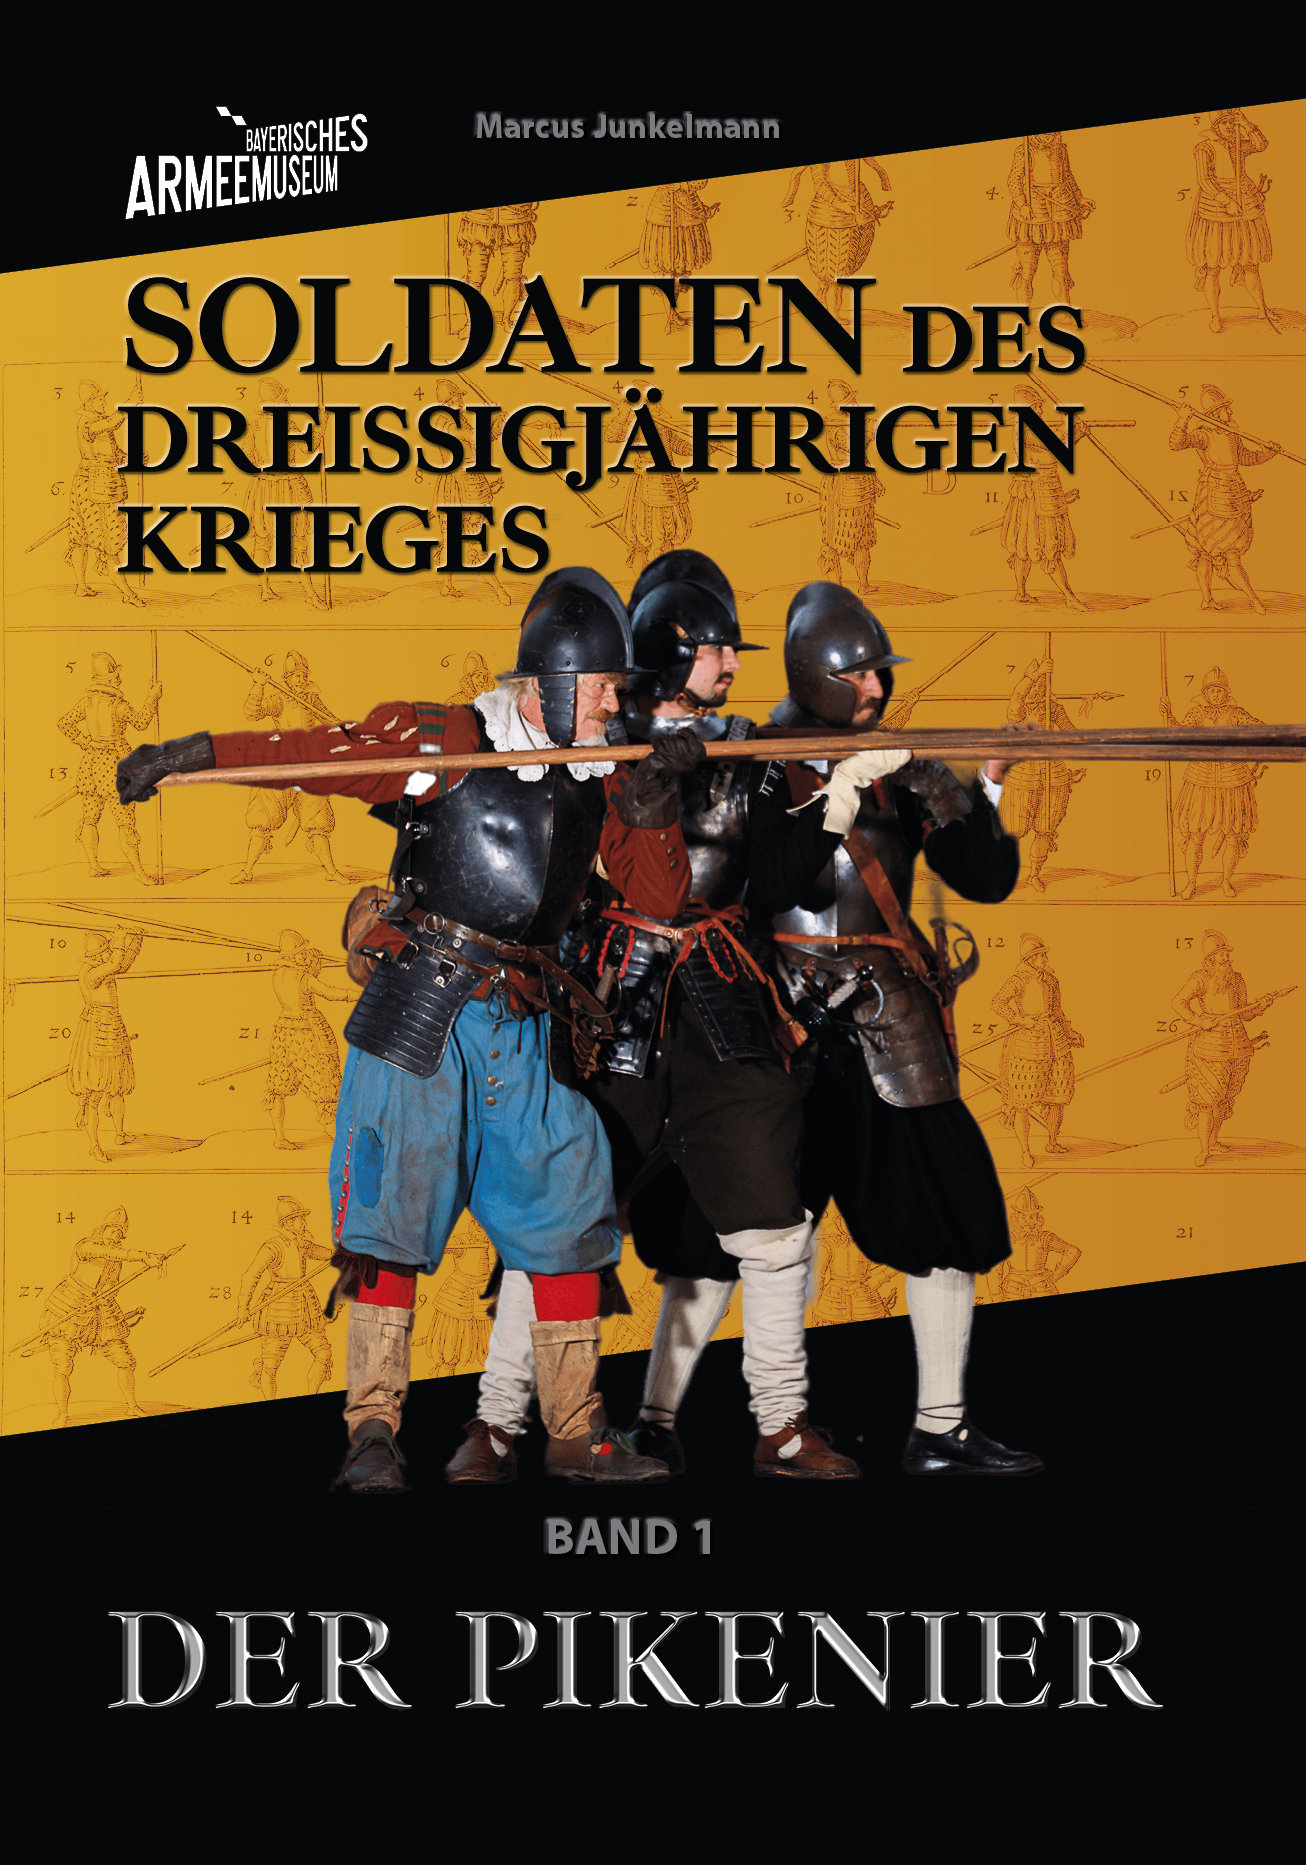 Marcus Junkelmann, Soldaten des Dreißigjährigen Krieges. Der Pikenier © Bayerisches Armeemuseum / Verlagsdruckerei Schmidt